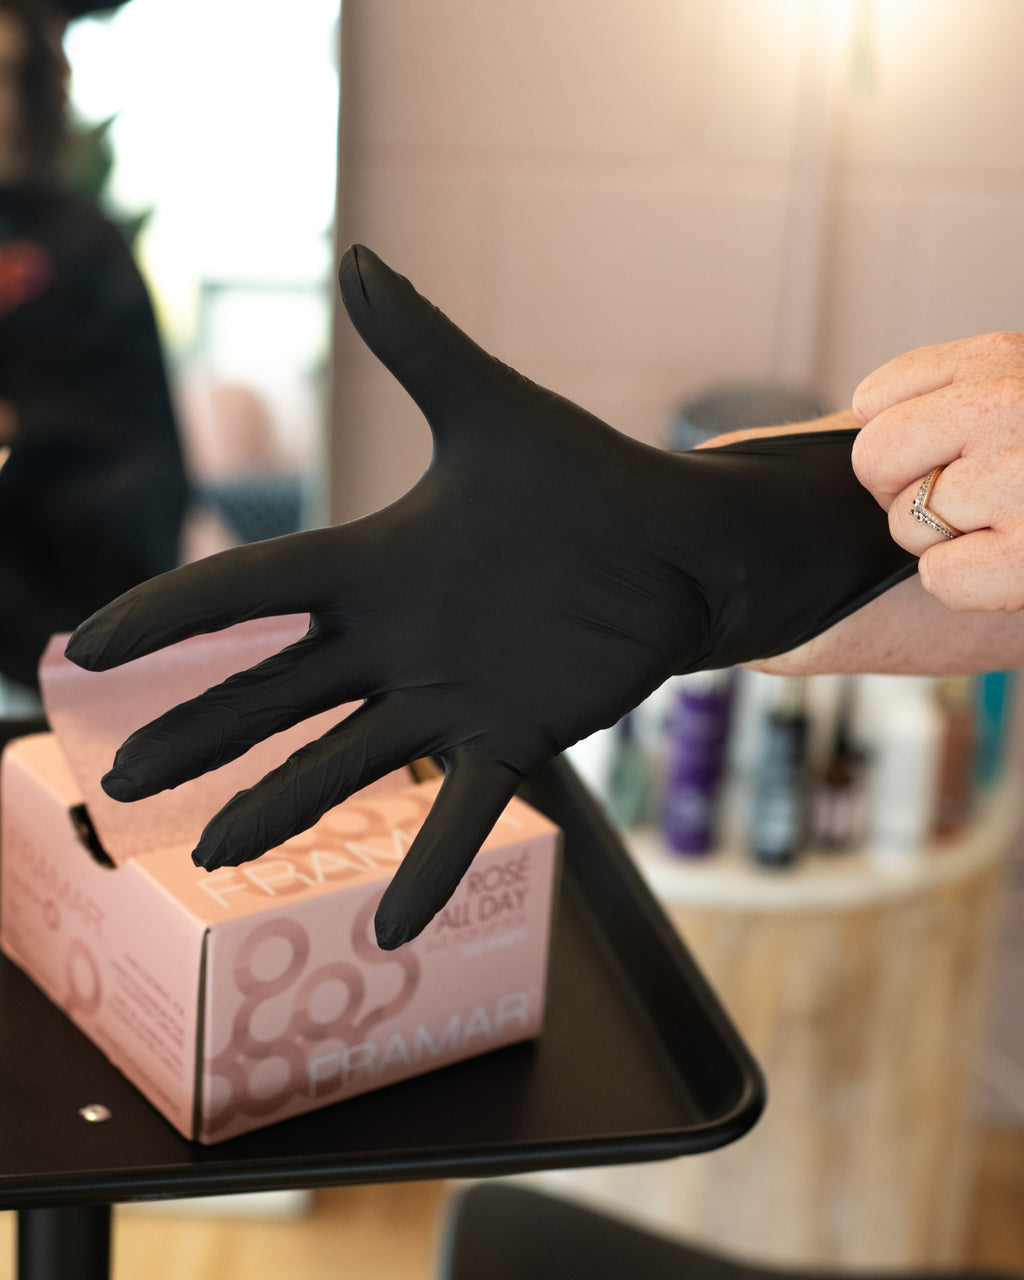 Framar Midnight Mitts Black Nitrile Gloves  Disposable Gloves, Latex Free  Gloves - 100 Count, Black Gloves, Non Latex Gloves, Vitrile